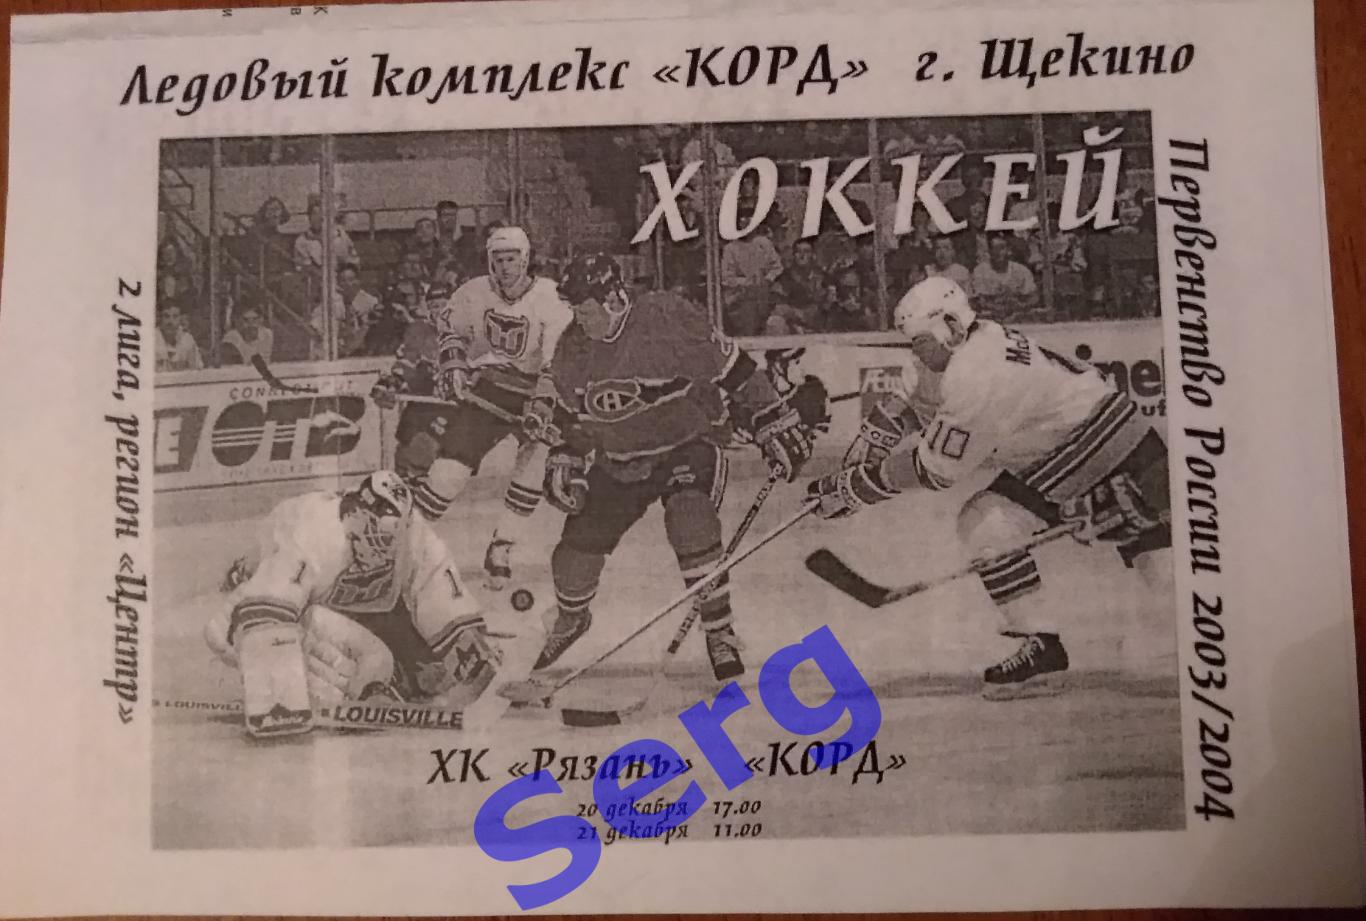 Корд Щекино - ХК Рязань Рязань - 20-21 декабря 2003 год КОПИЯ!!!